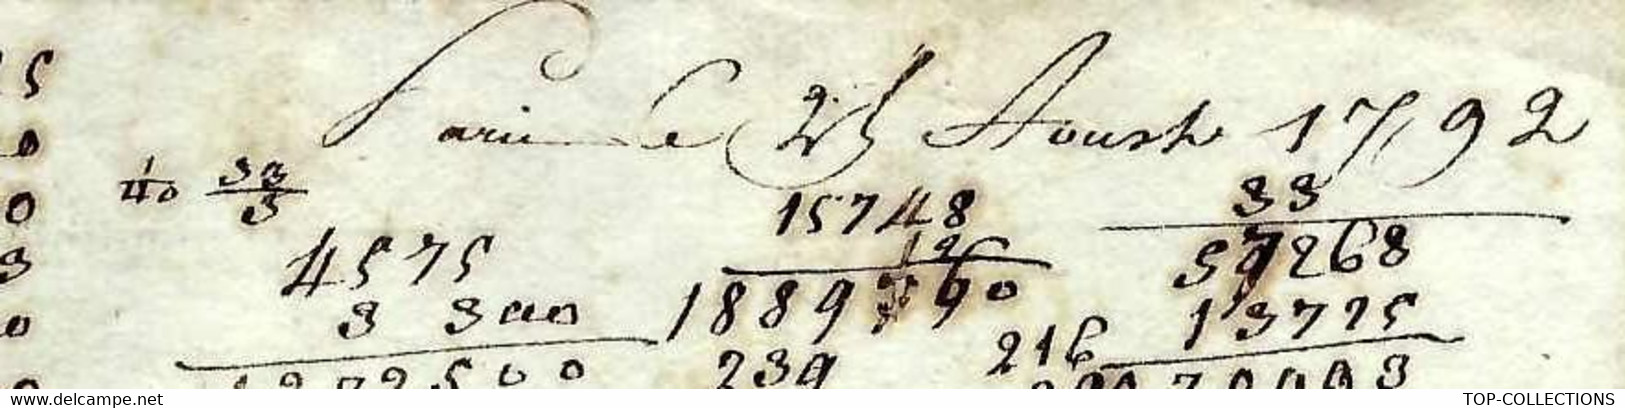 1792 de Paris  Vialle pour Stokar Stockar citoyen suisse négoce commerce  Nantes  V.HISTORIQUE SUR CE NOM